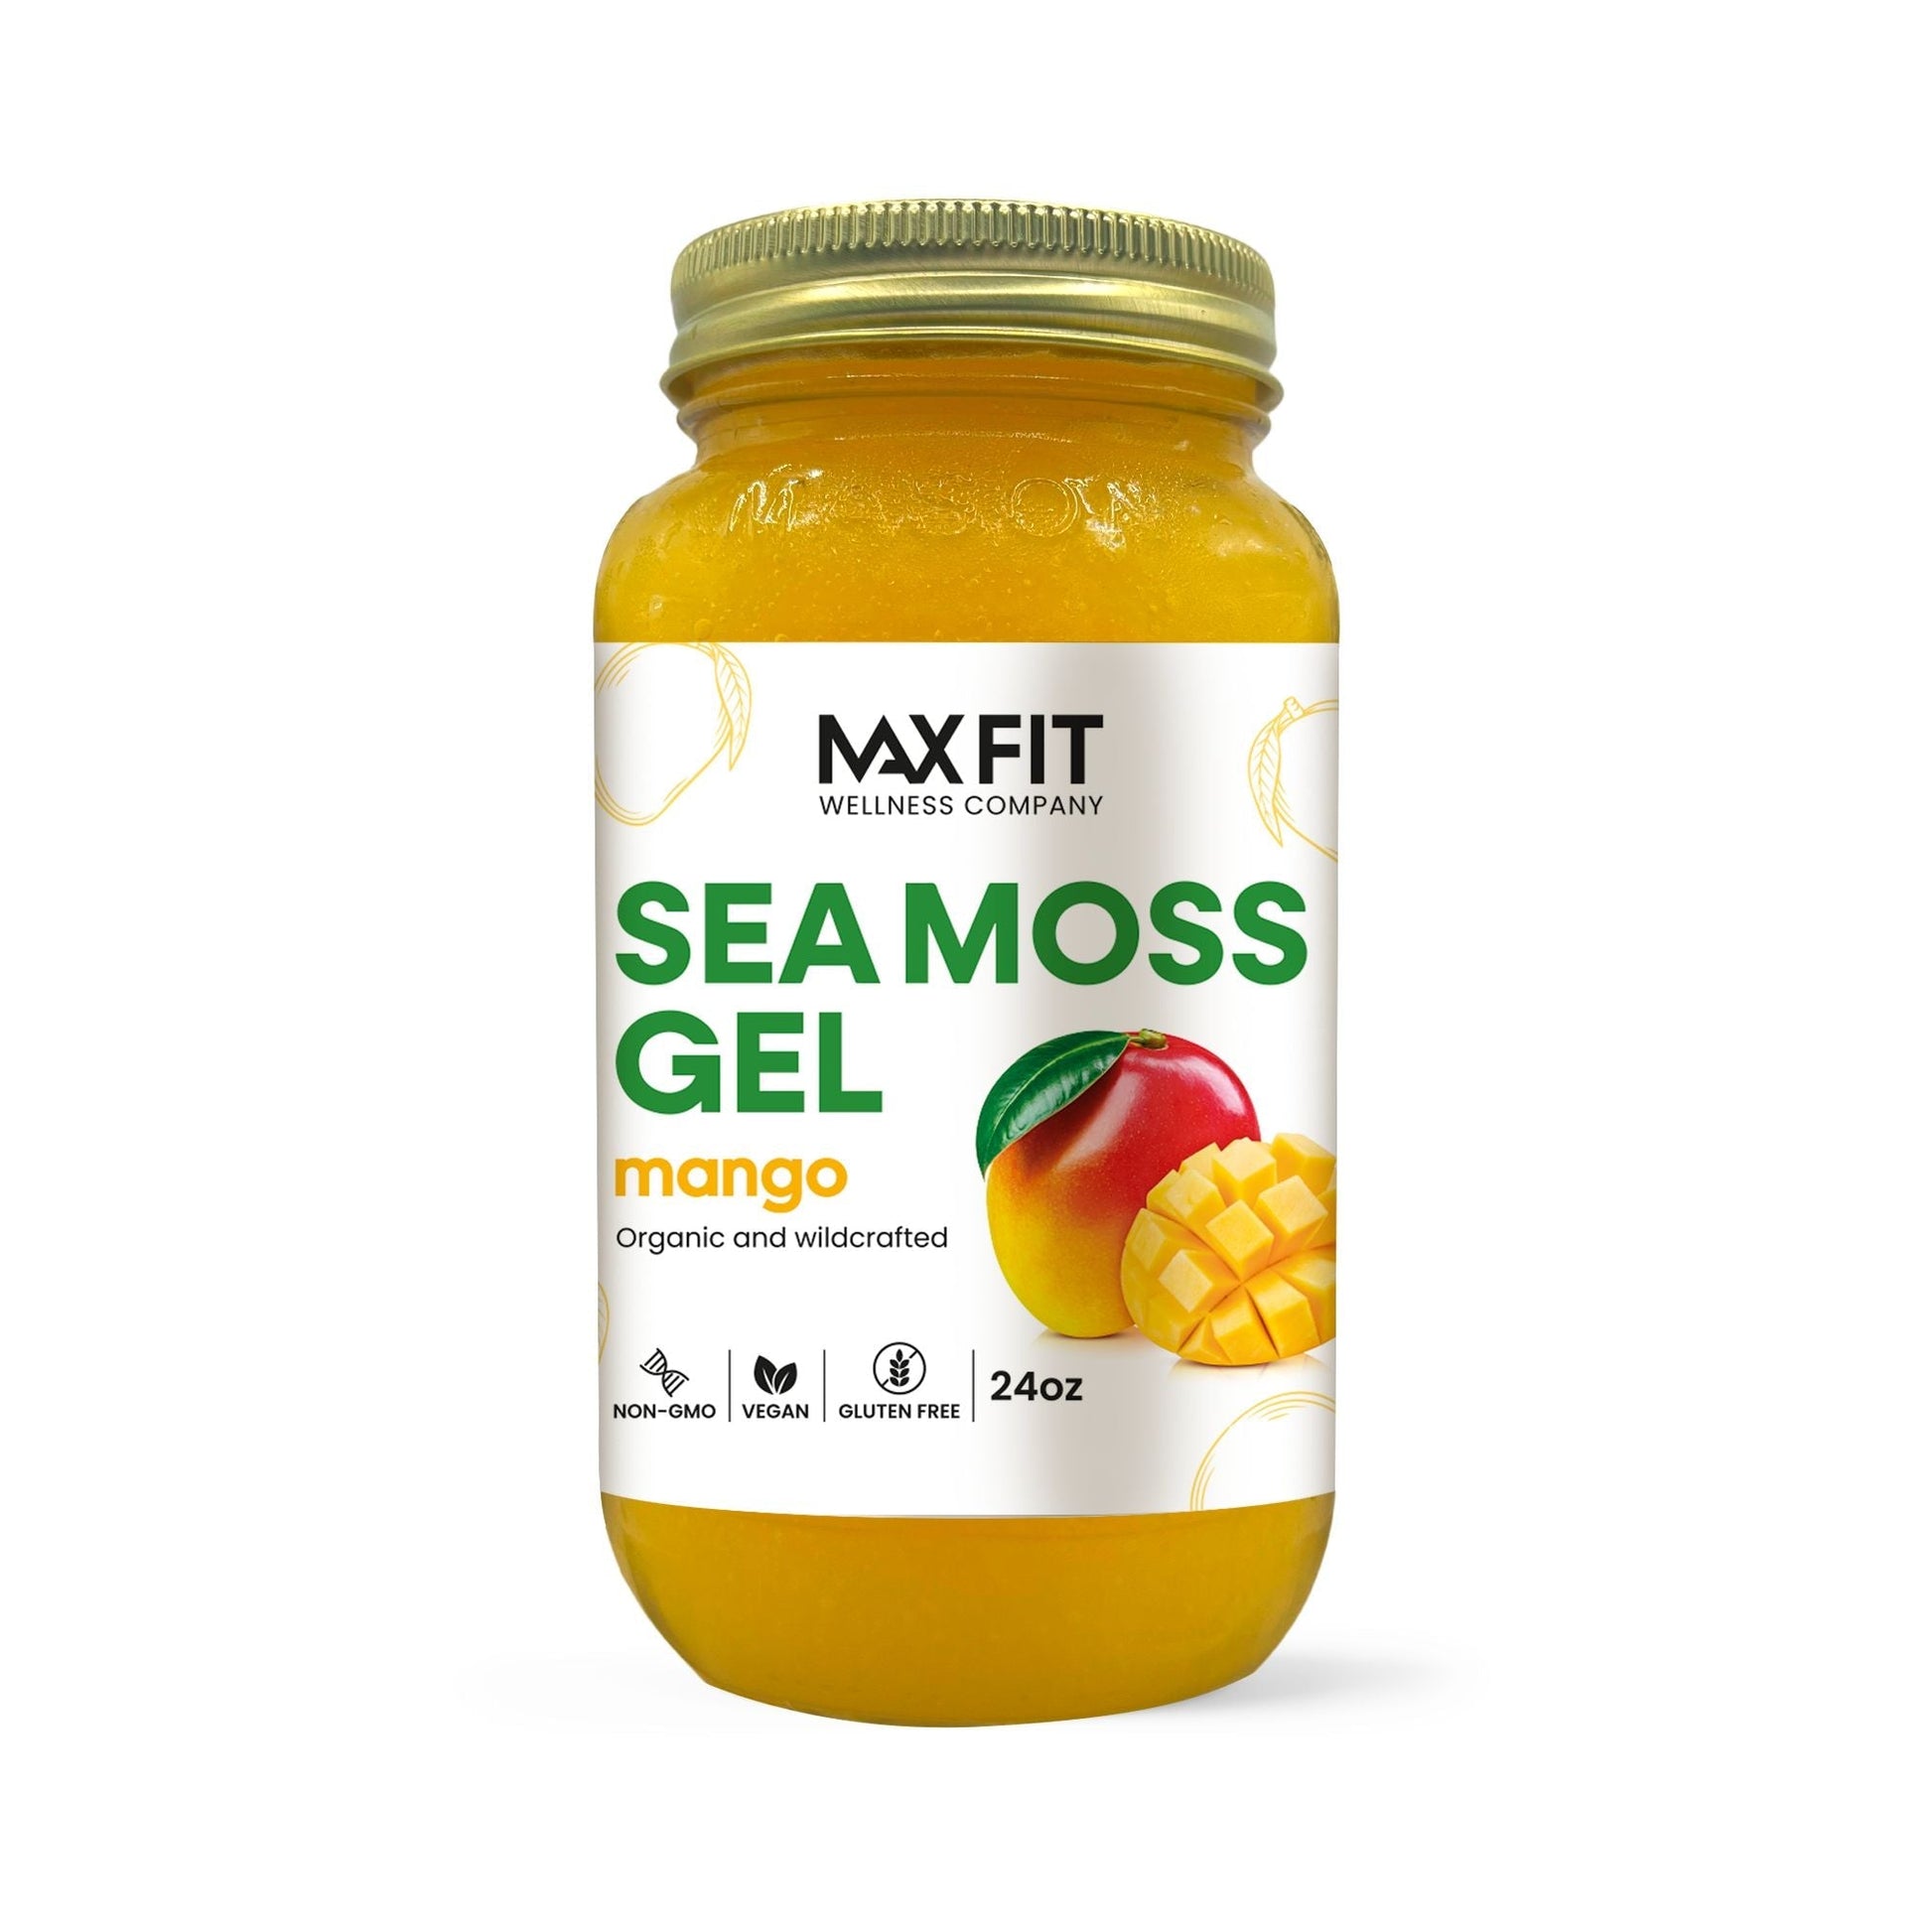 Mango Sea Moss Gel 24oz - 1800SEAMOSS.com